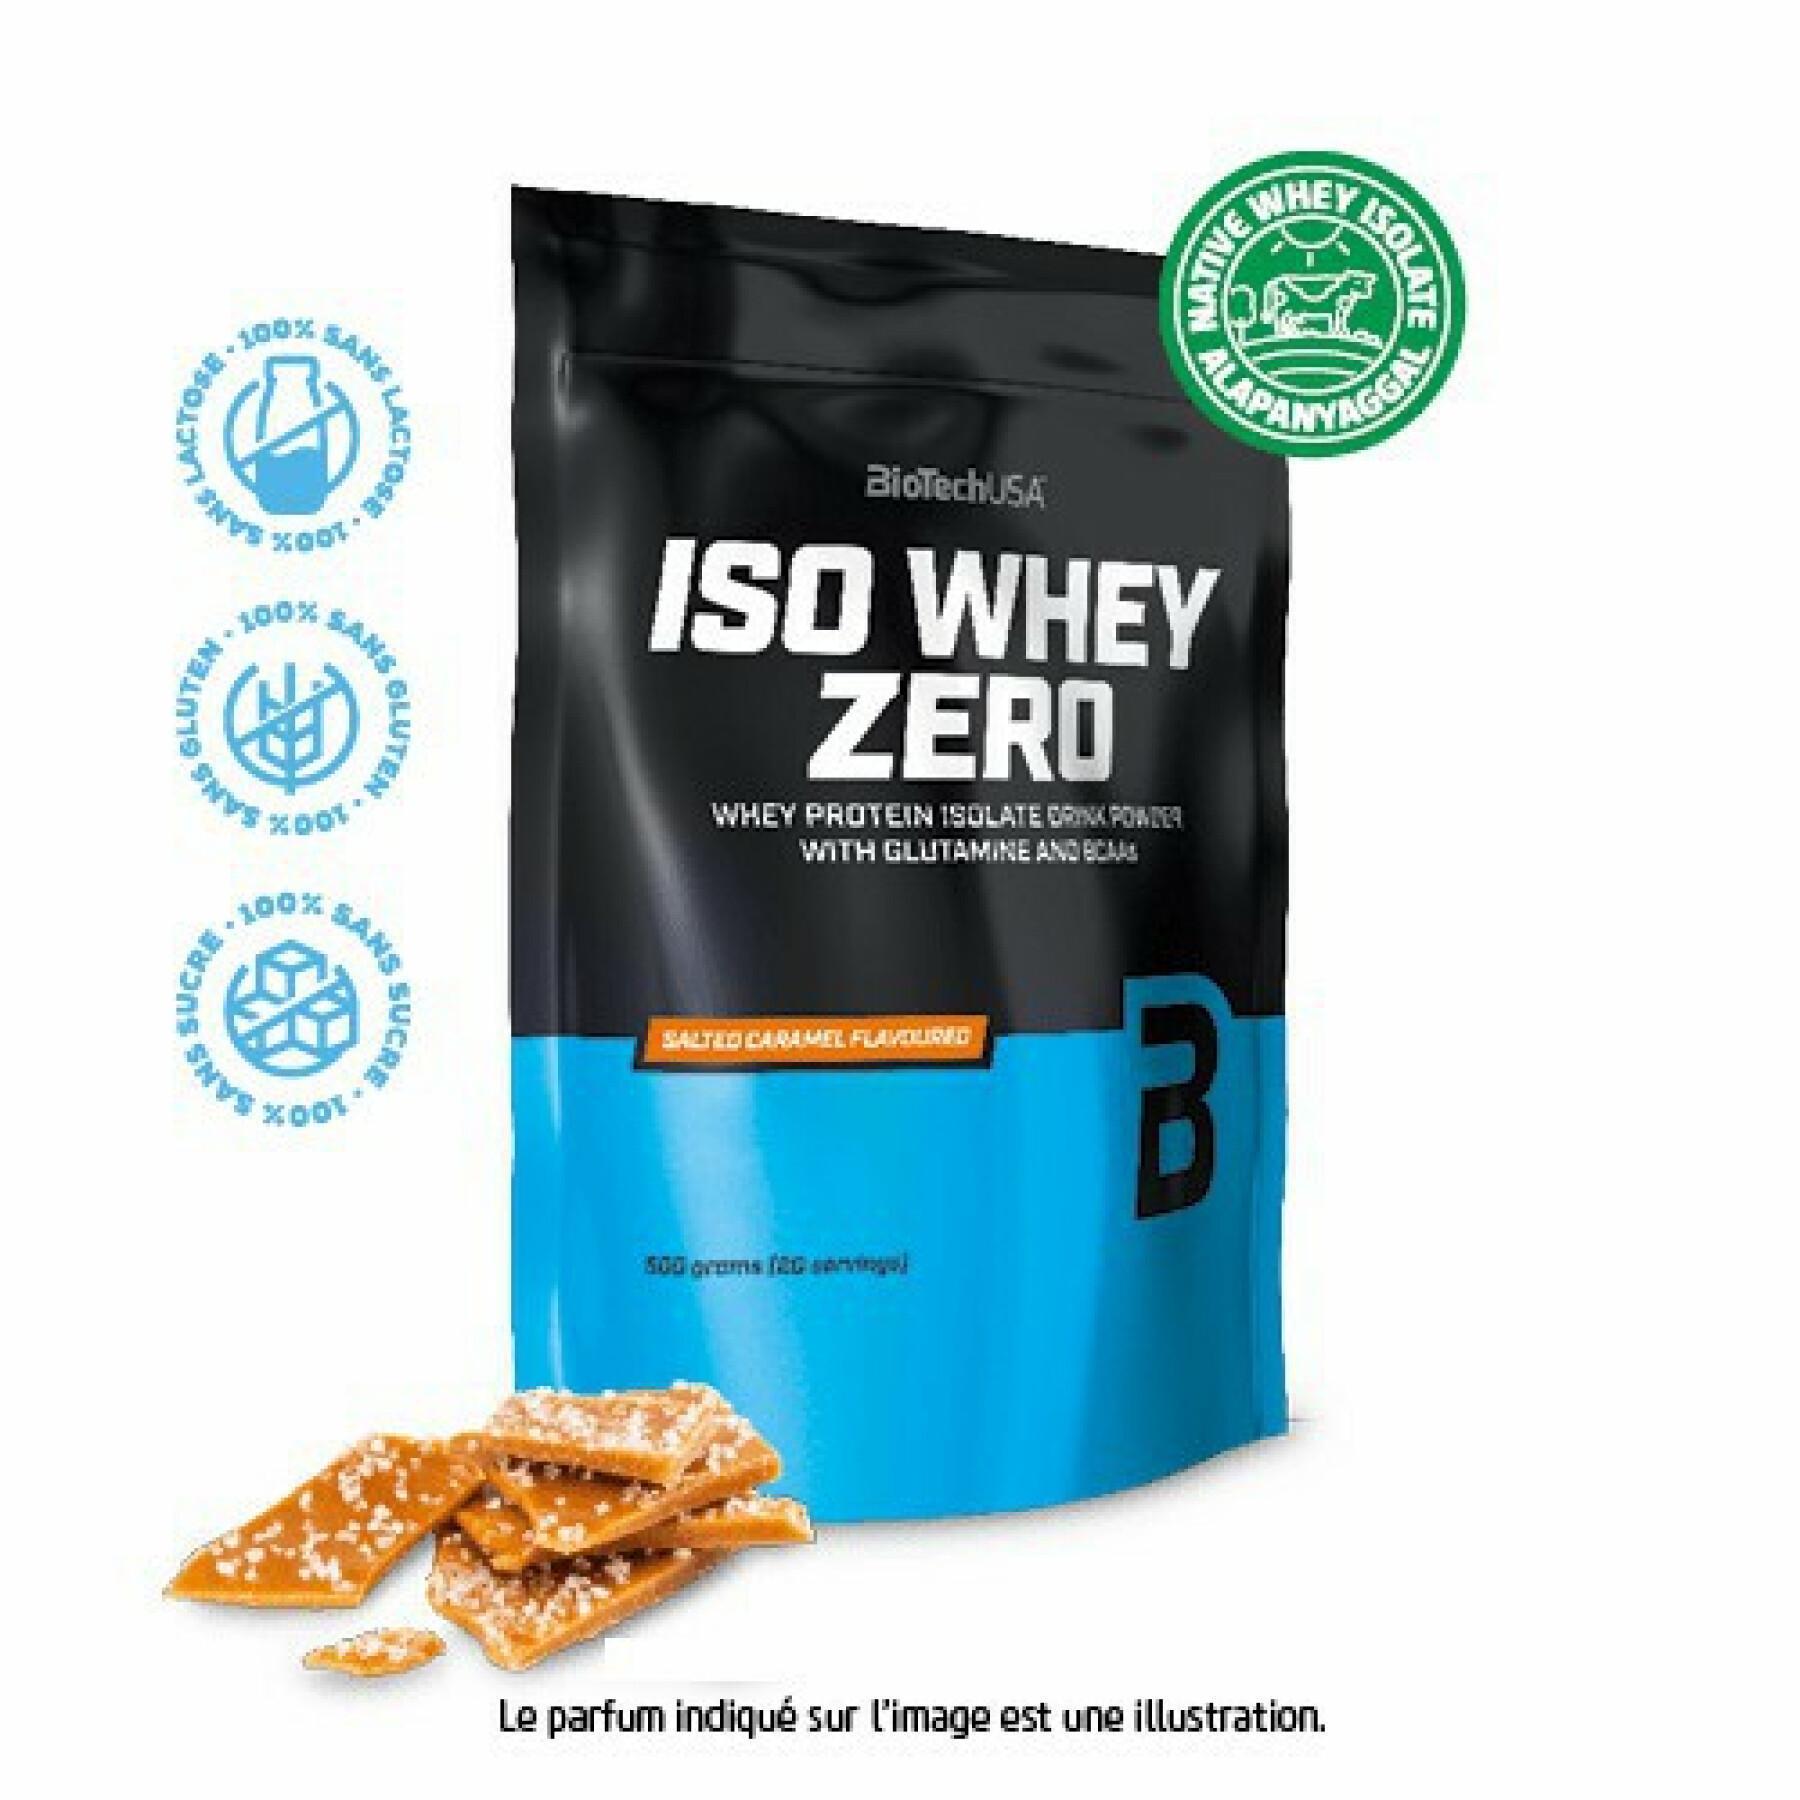 Paquete de 10 bolsas de proteínas Biotech USA iso whey zero lactose free - Caramel salé - 500g